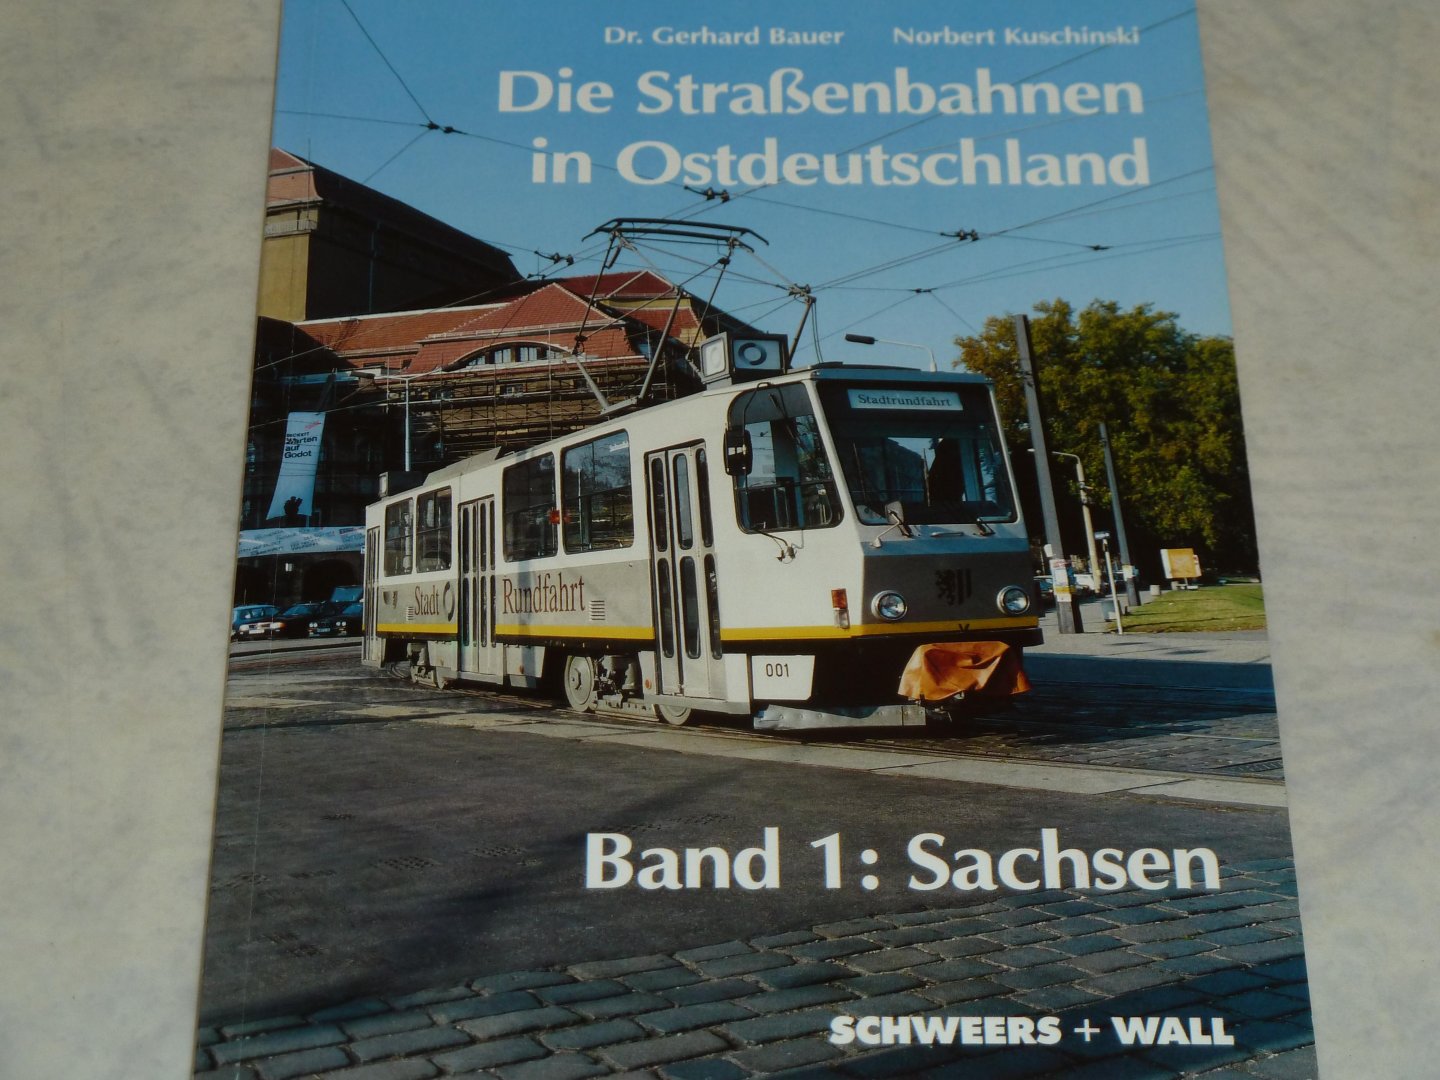 Bauer, Gerhard Dr. / Kuschinski, Norbert - Die Strassenbahnen in Ostdeutschland.  Band 1: Sachsen